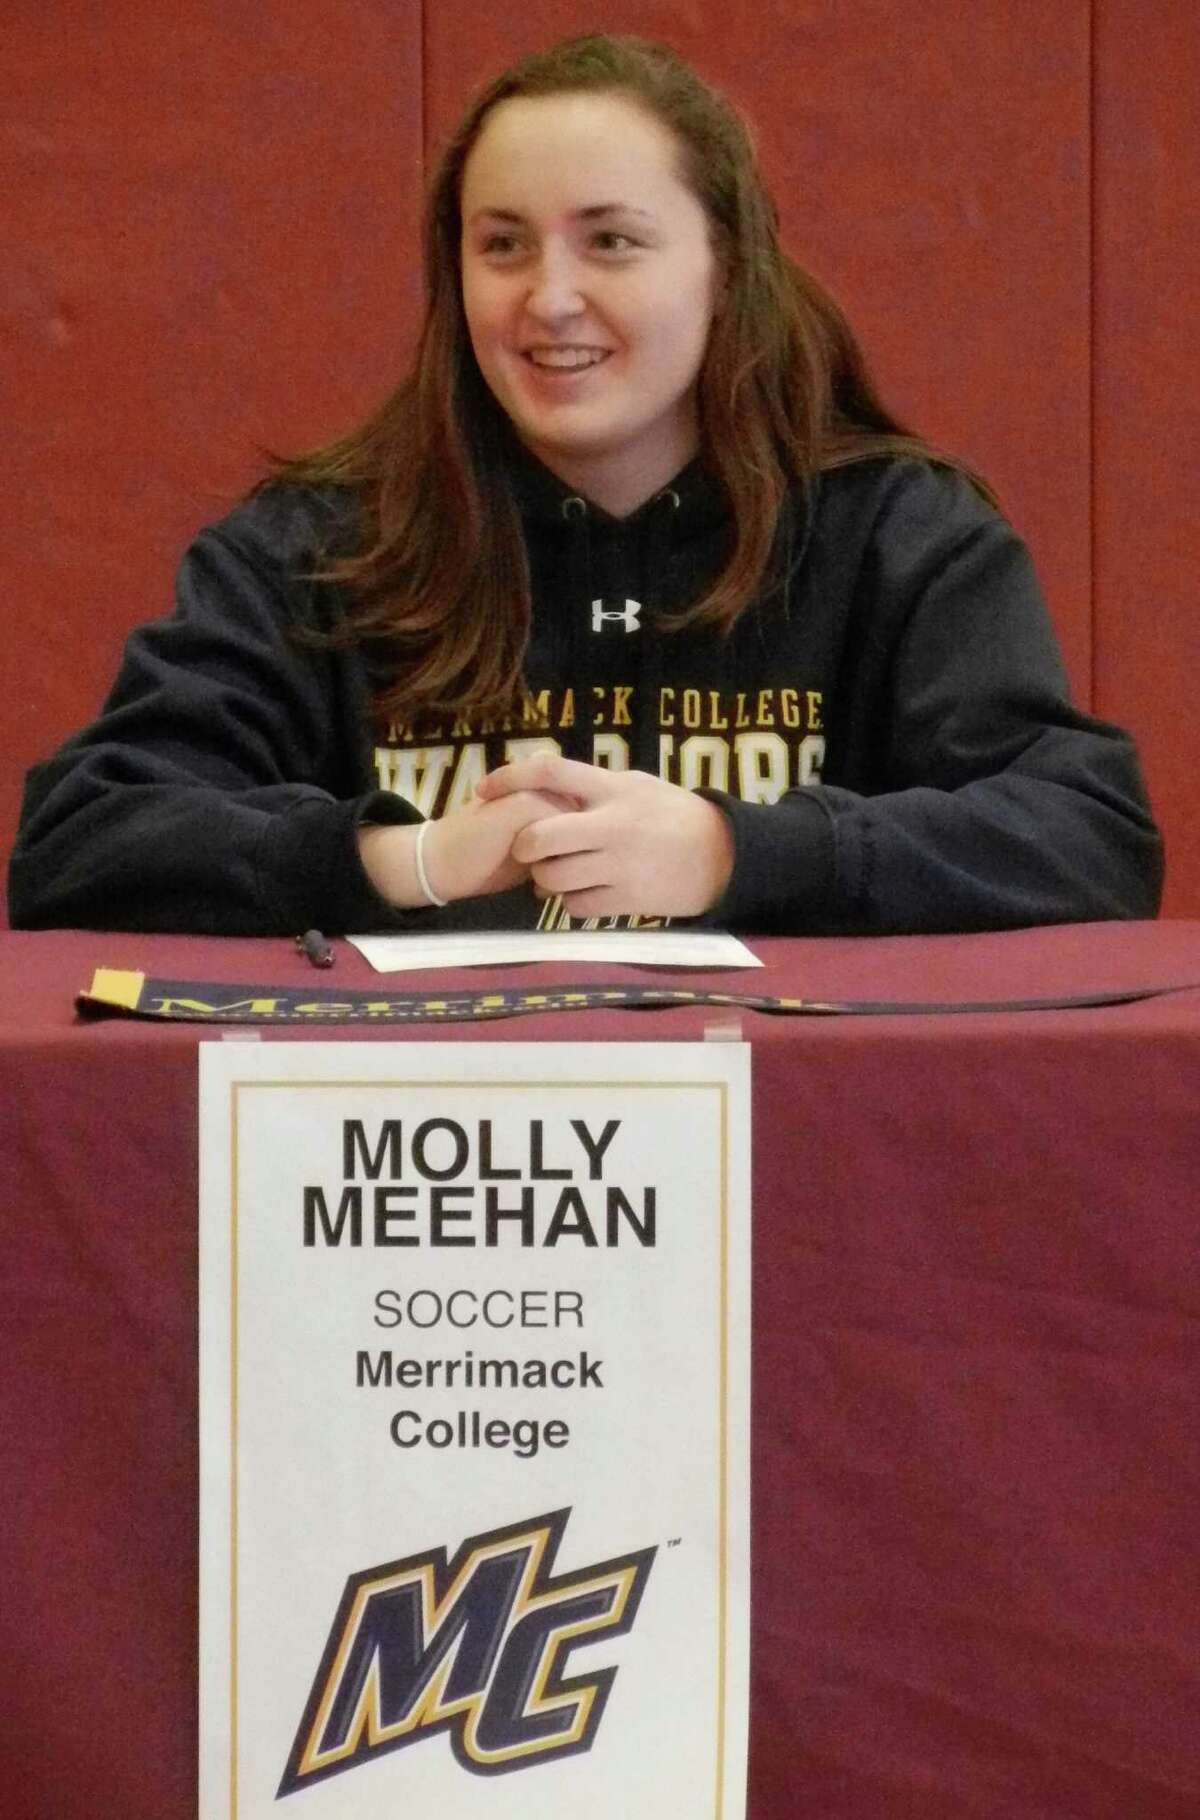 St. Joseph-Trumbull senior goalkeeper Molly Meehan, of Fairfield, will play women's soccer at Merrimack College in 2014-15.